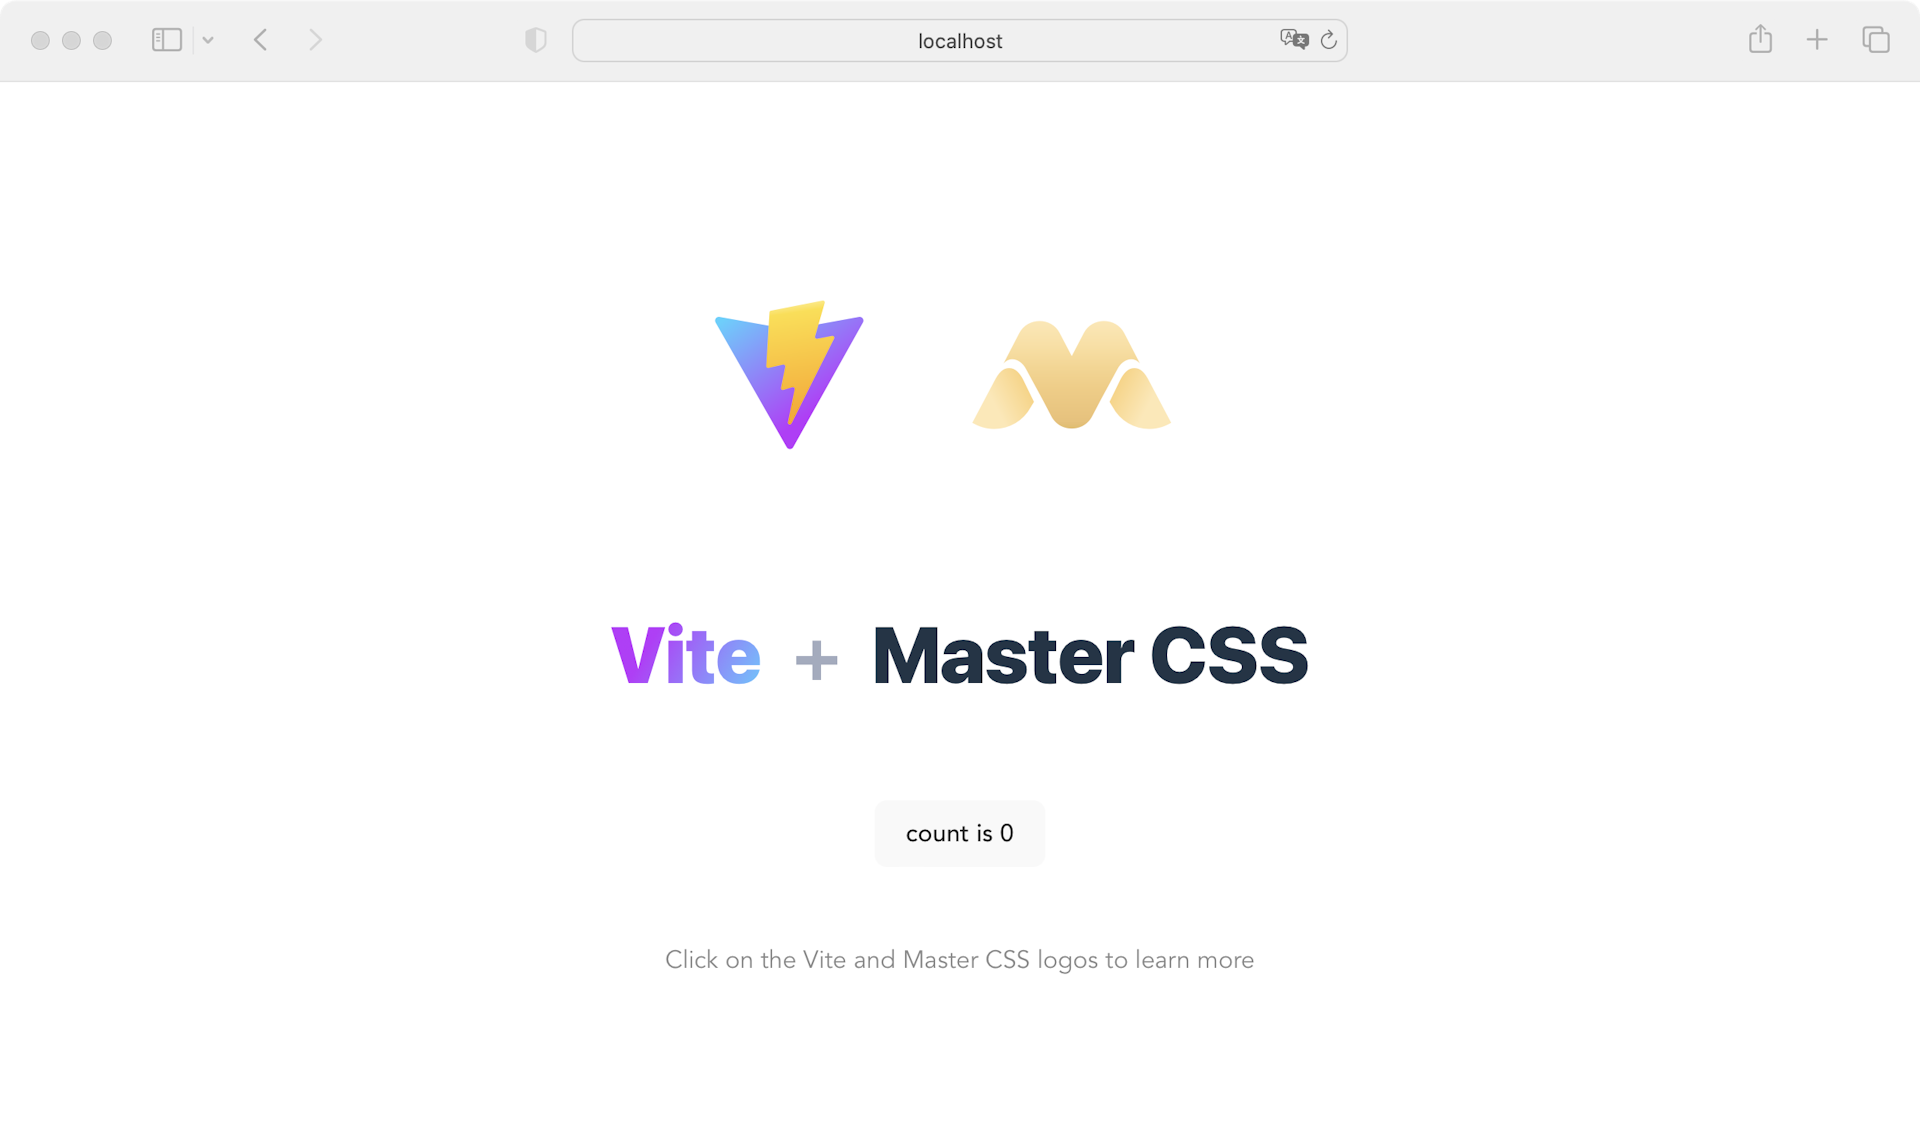 Vite and Master CSS